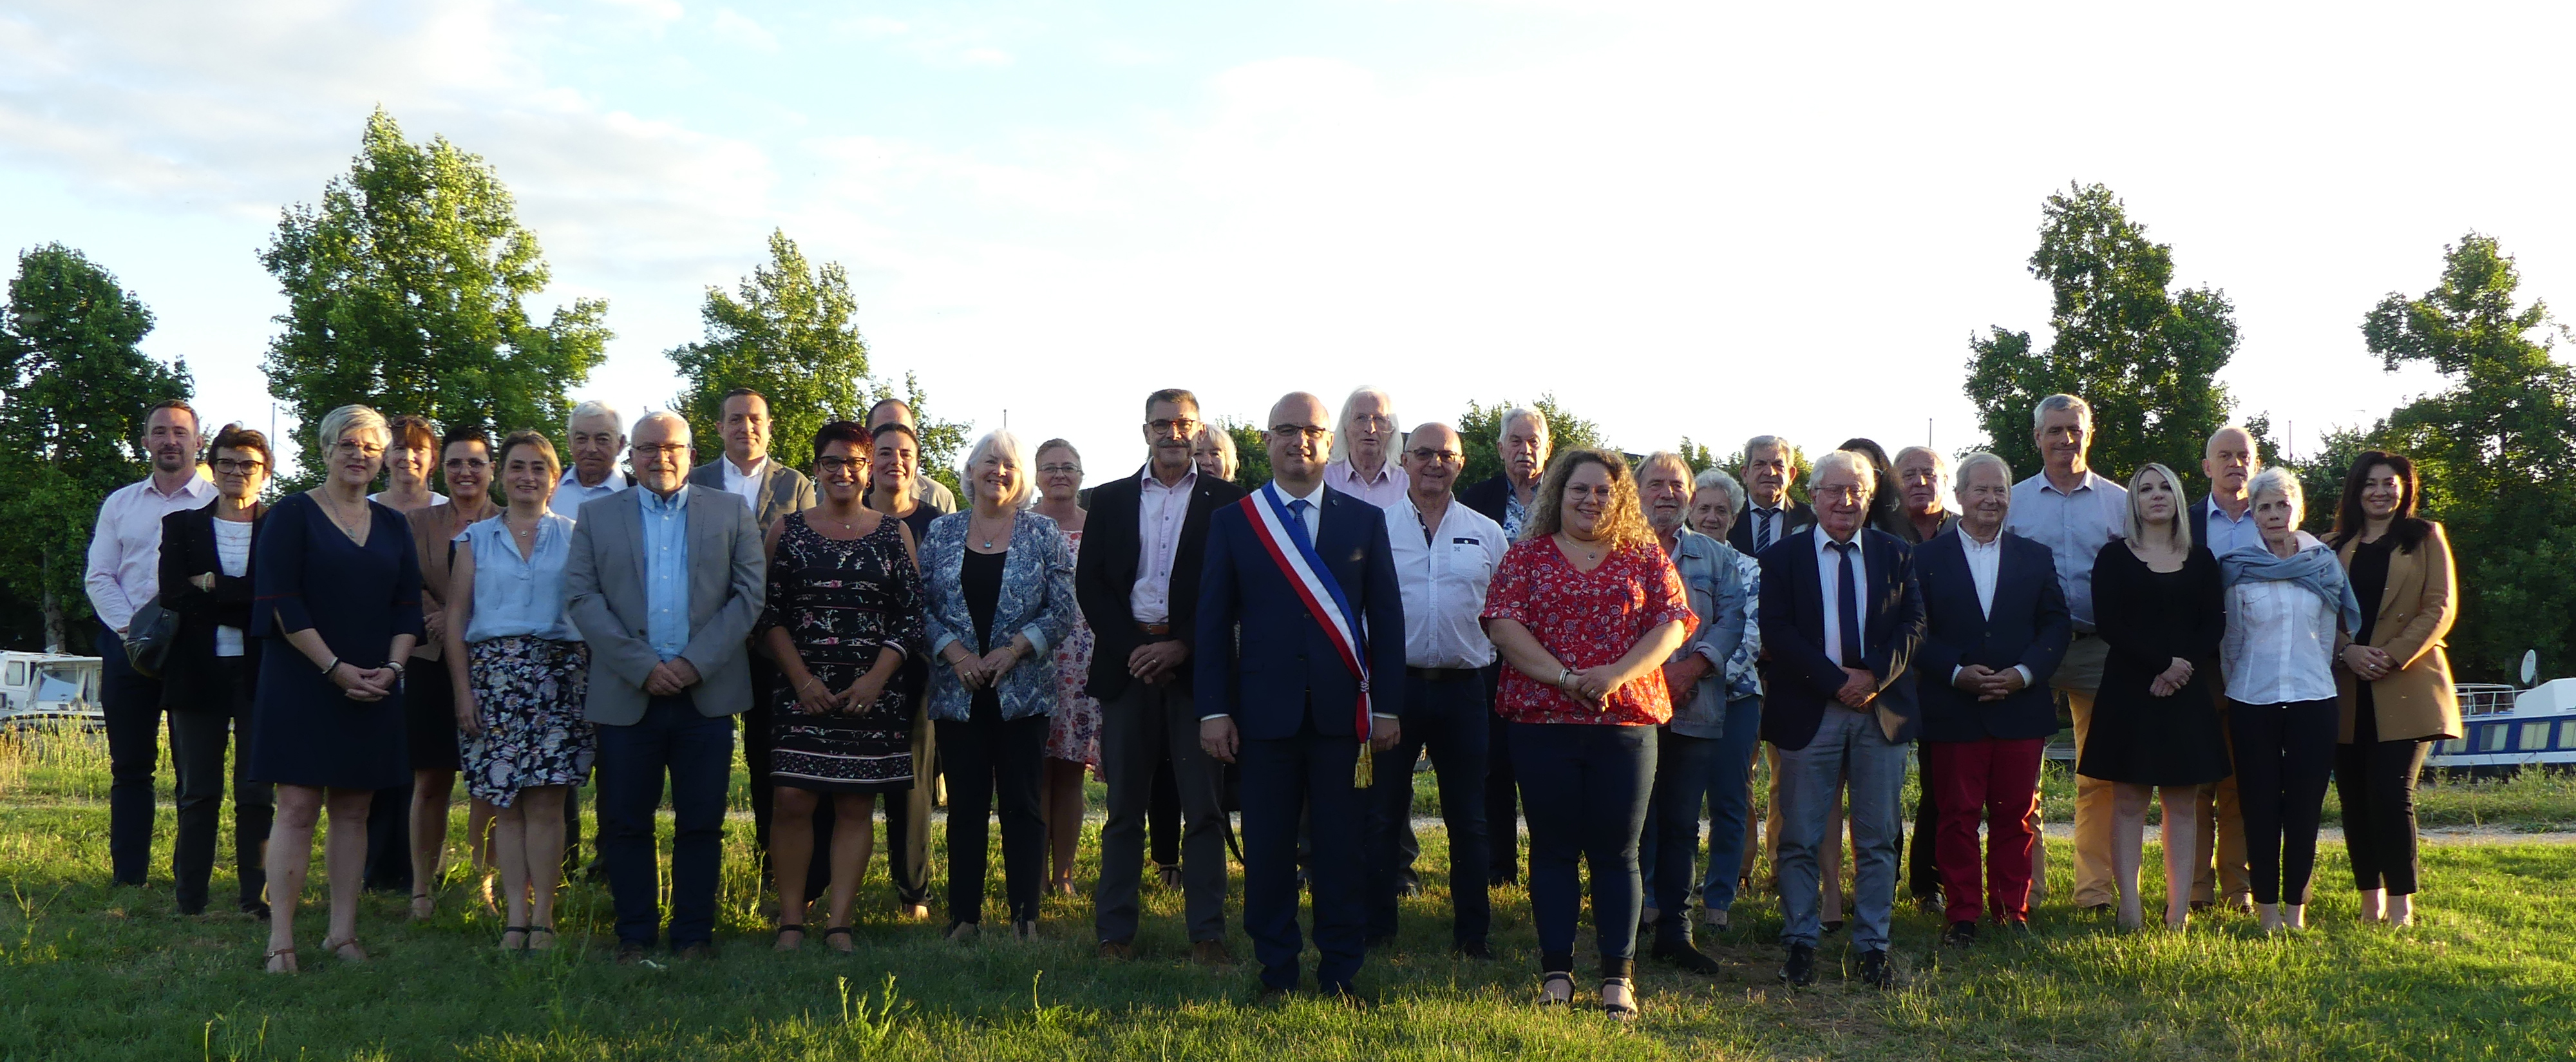 Photo de groupe du conseil municipal de Castelsarrasin, élu en 2020 et composé de 33 membres. Monsieur le maire se trouve au centre